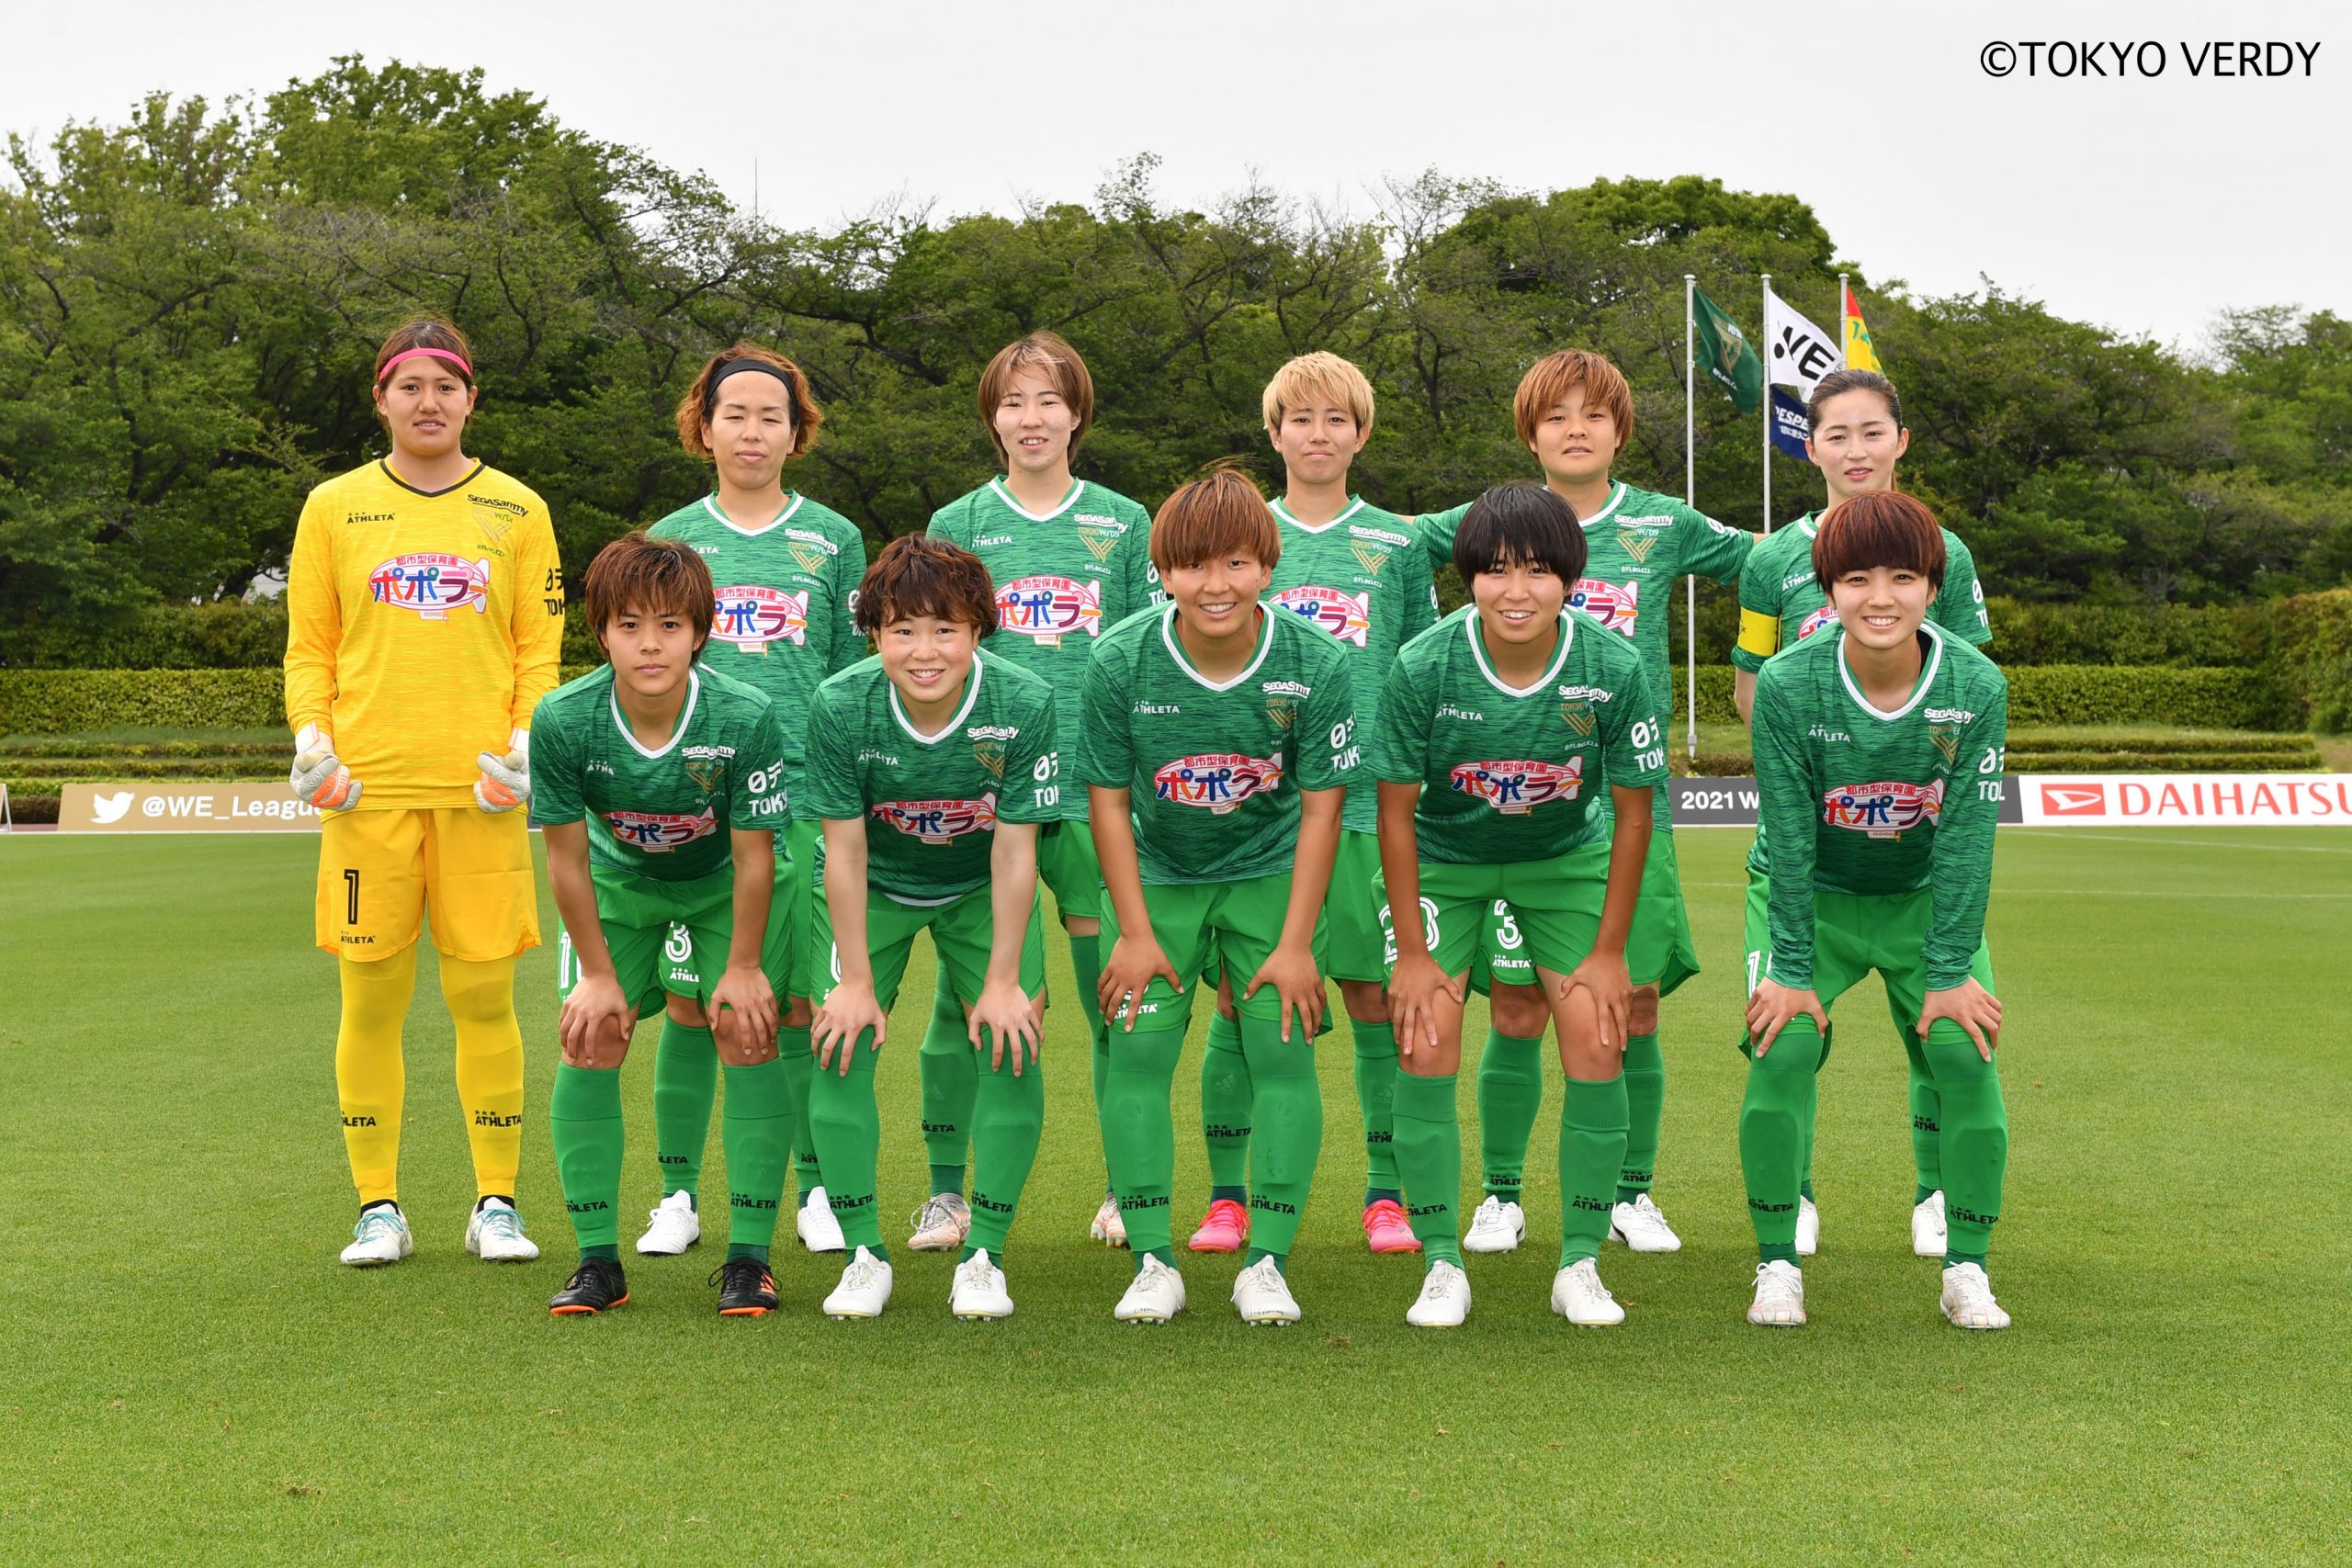 日本女子サッカーのリーディングチームとして 日テレ 東京ヴェルディベレーザの現在地 サッカーキング